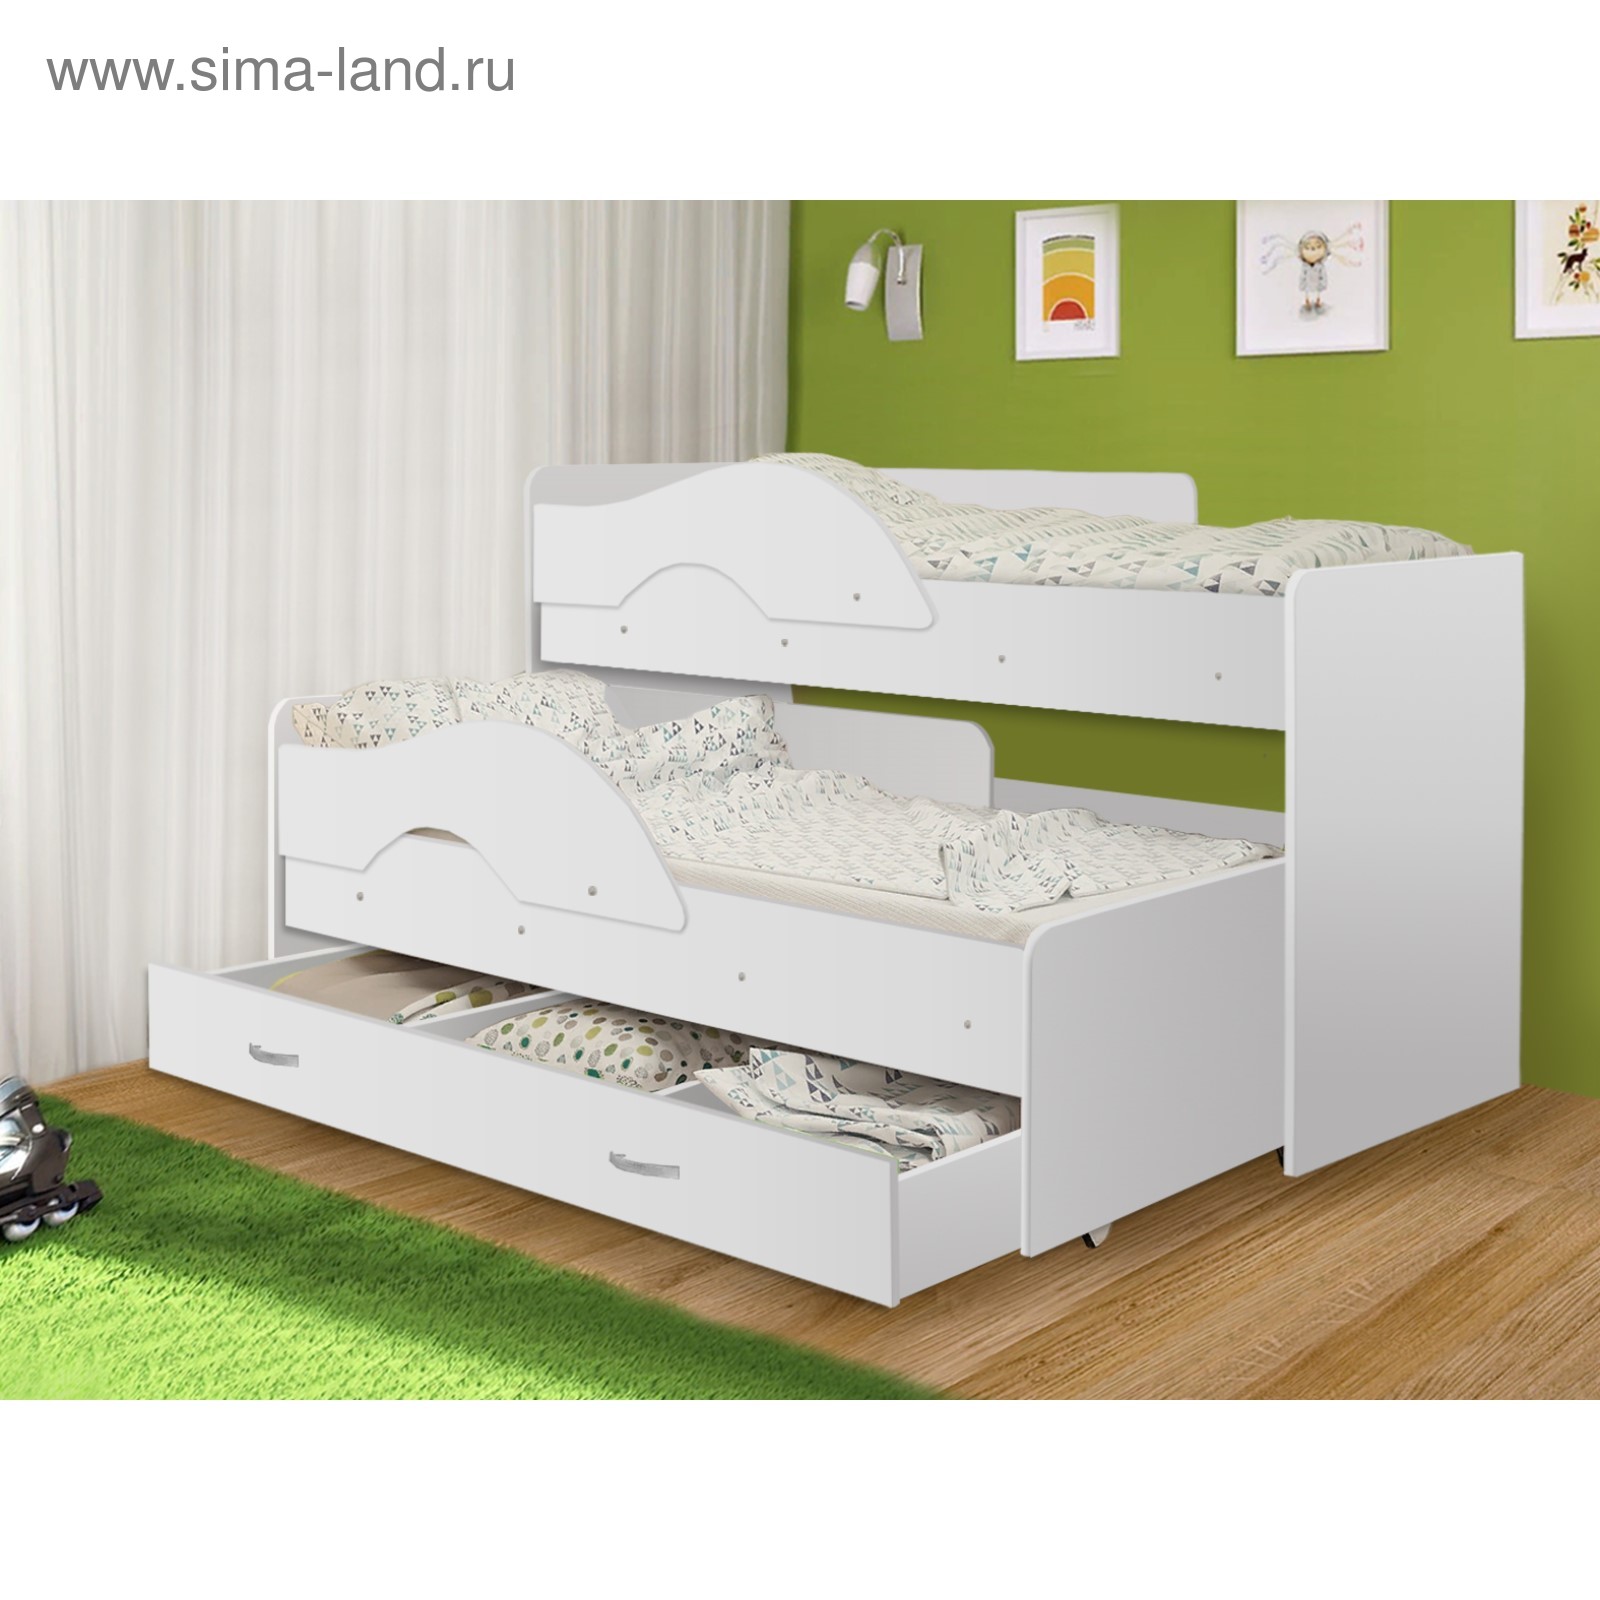 детская выдвижная кровать для двоих размеры